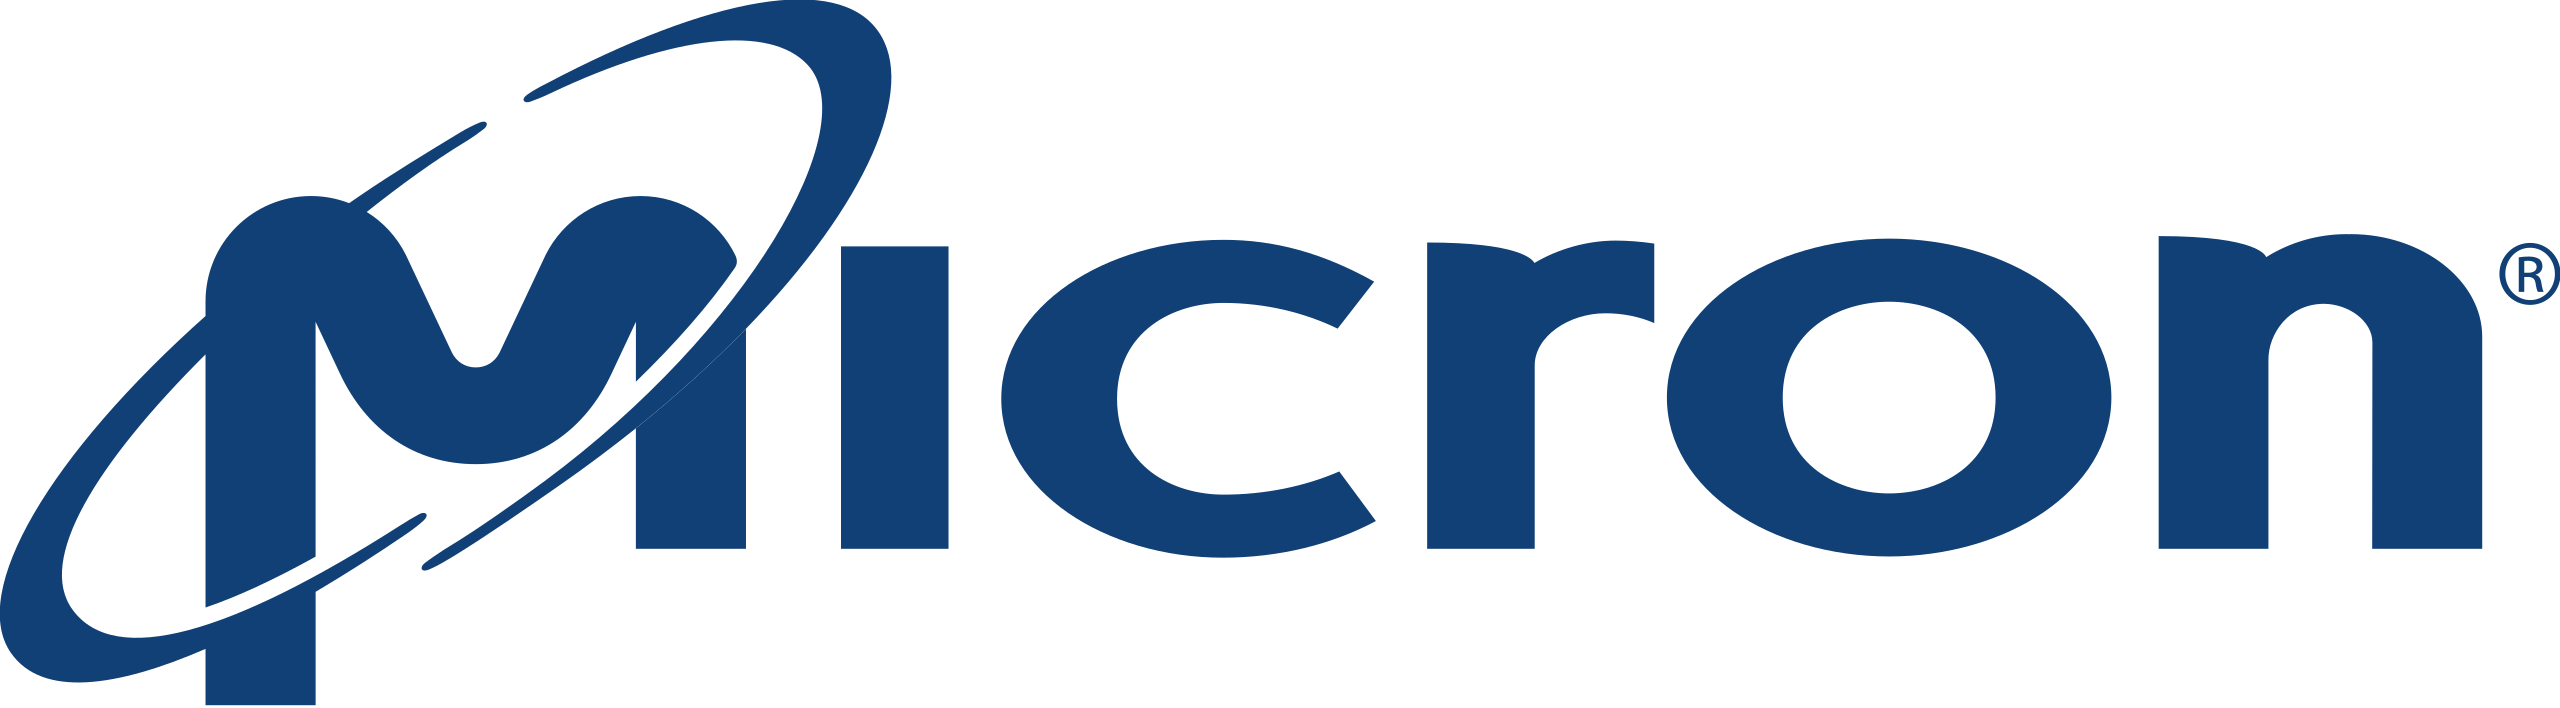 File:Micron Technology logo.svg - Wikipedia